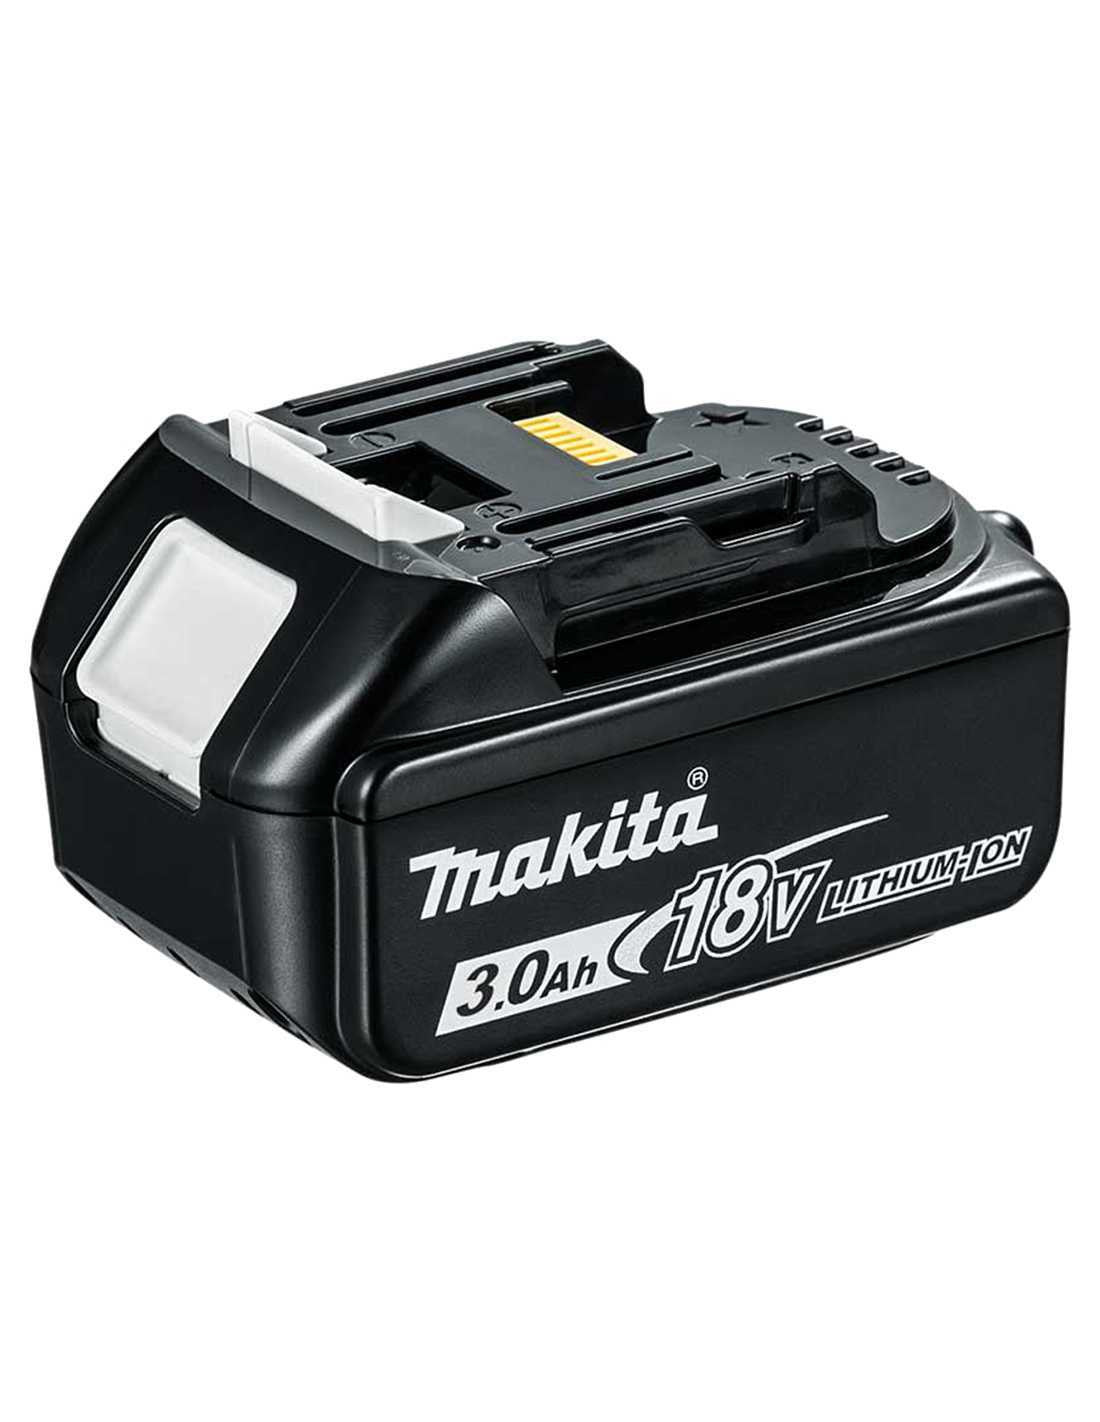 Kit Makita avec 9 outils + 3 battes 5,0 Ah + chargeur + 2 sacs DLX9243BL3